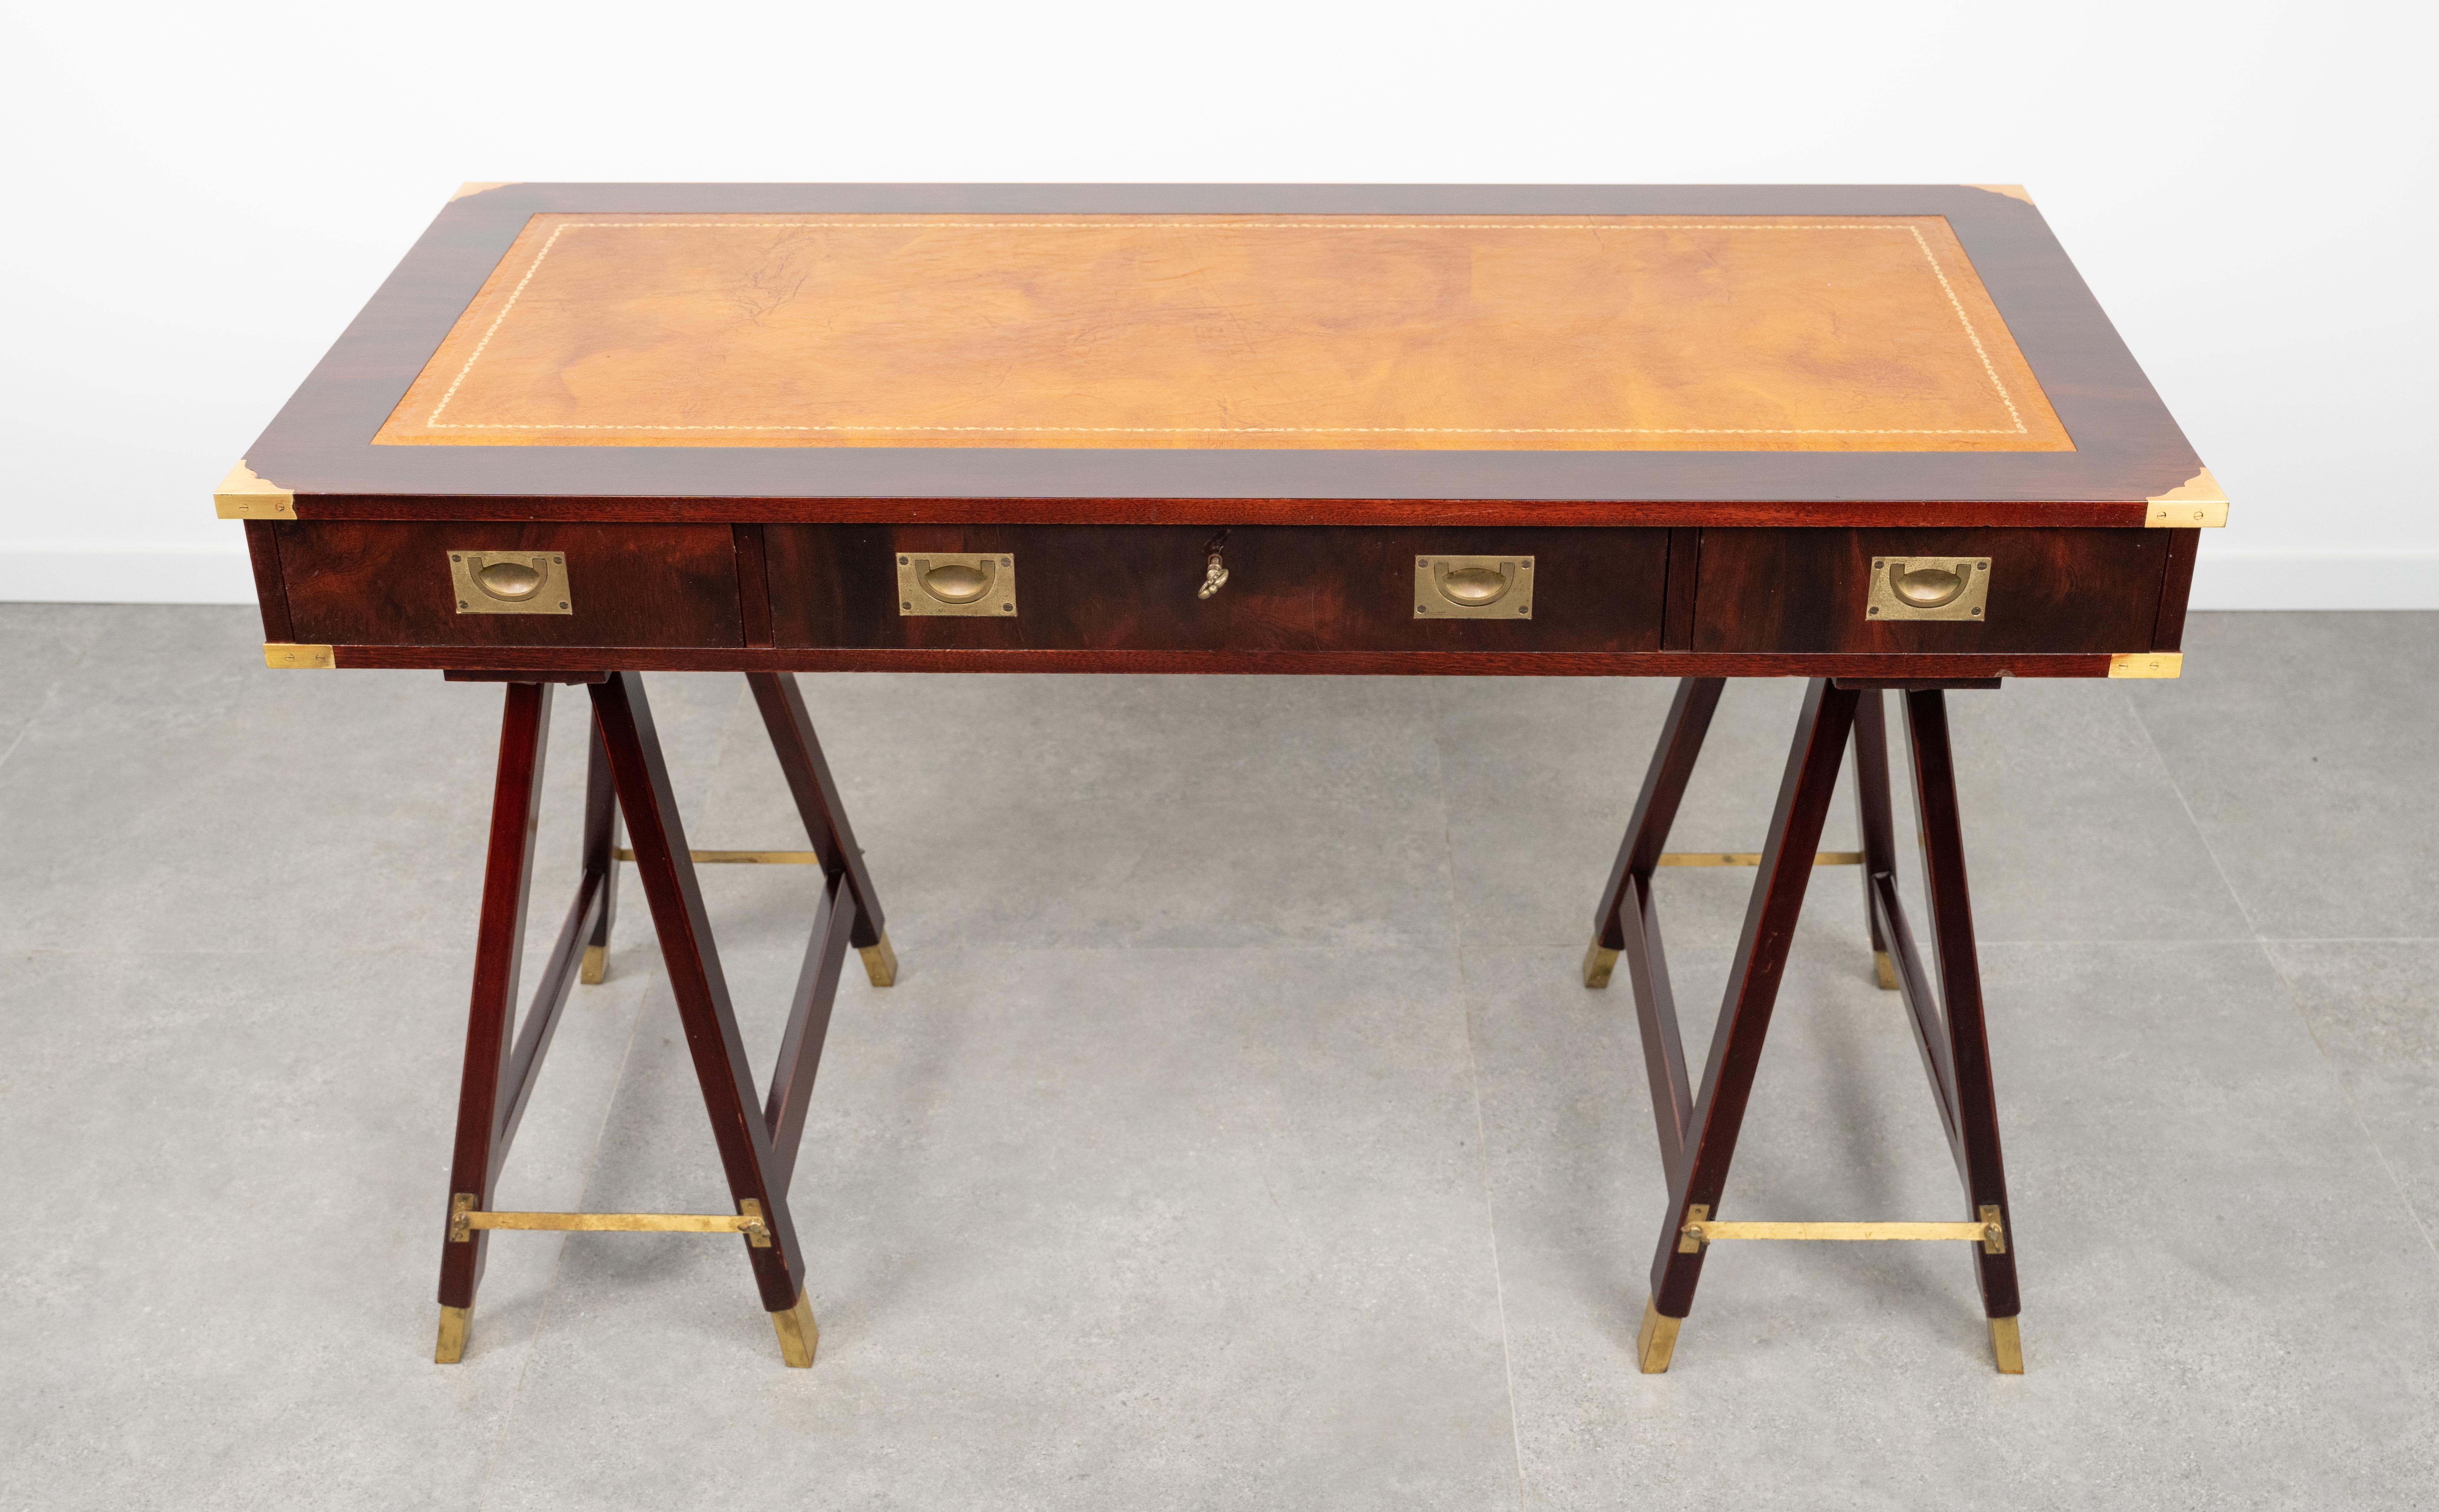 Table de bureau étonnante  dans le style campagne militaire antique en bois, laiton et cuir avec trois tiroirs par Sea Line Orvieto.

Fabriqué en Italie dans les années 1960.

Il comporte trois tiroirs de bonne taille avec des poignées et des